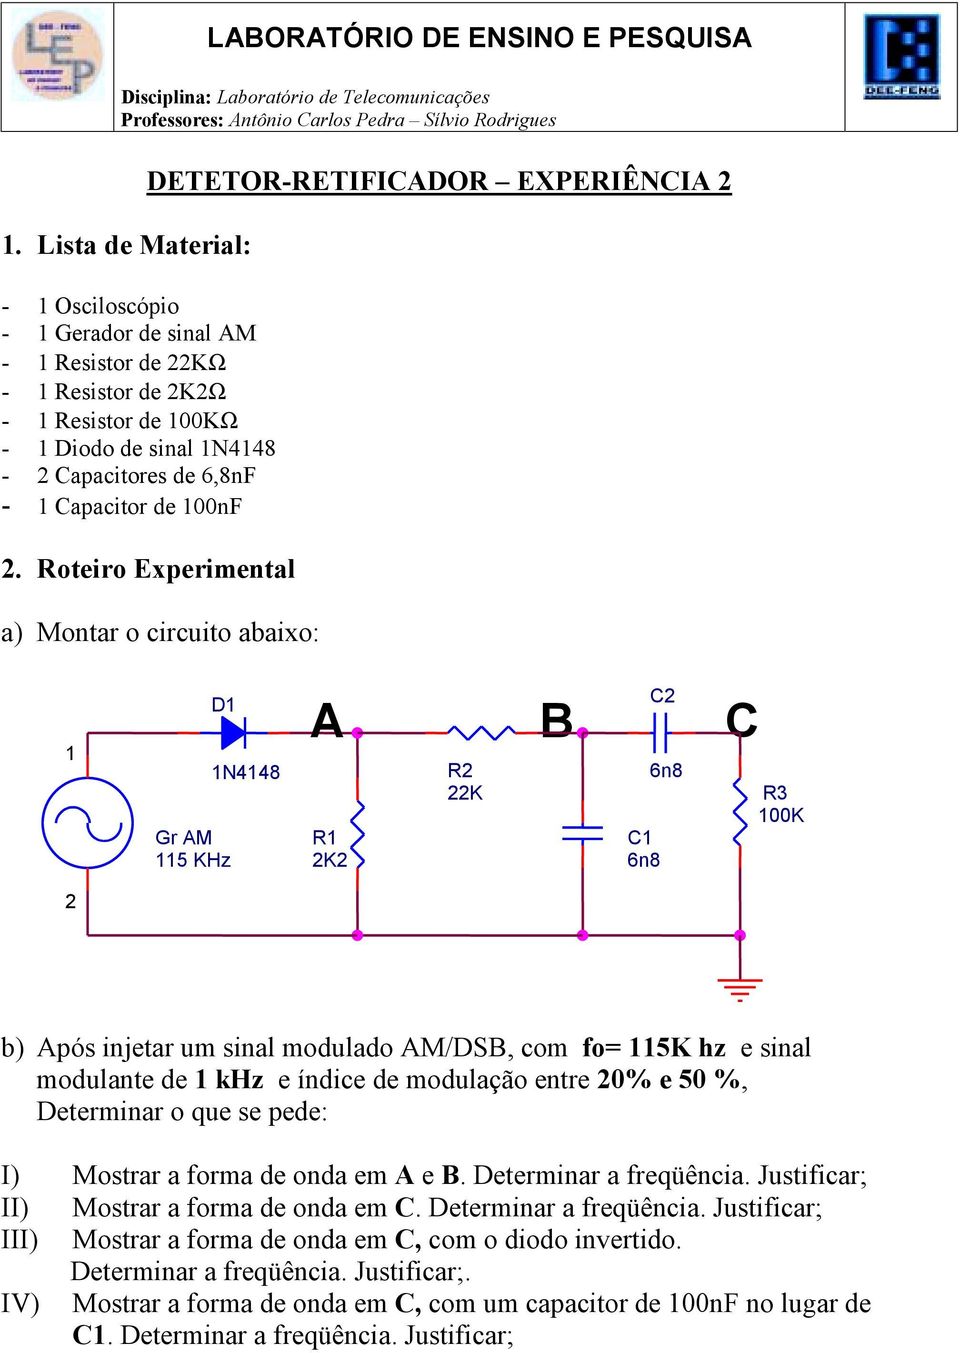 Roteiro Experimental a) Montar o circuito abaixo: D Gr M 5 KHz N448 R K R K C C 6n8 6n8 C R 00K b) pós injetar um sinal modulado M/DS, com fo= 5K hz e sinal modulante de khz e índice de modulação